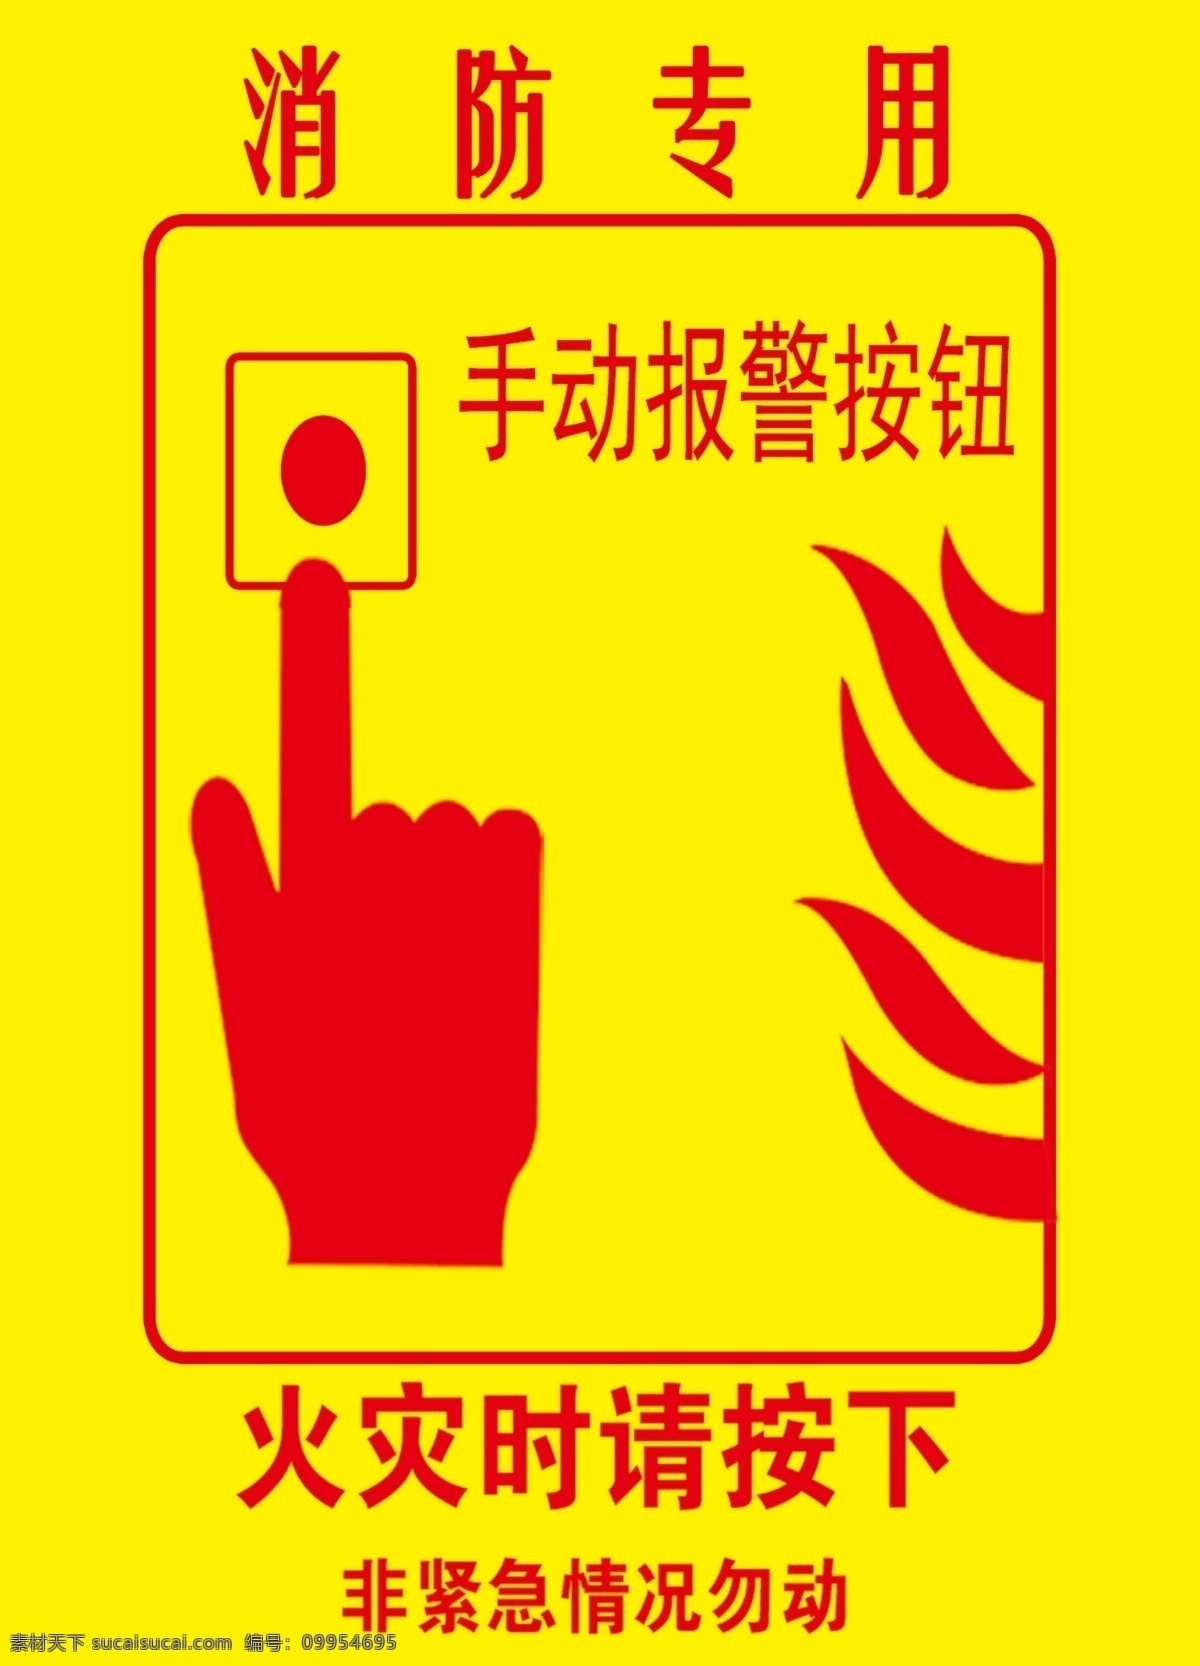 贴纸 消防贴纸 火灾时按下 手动报警按钮 消防专用 分层